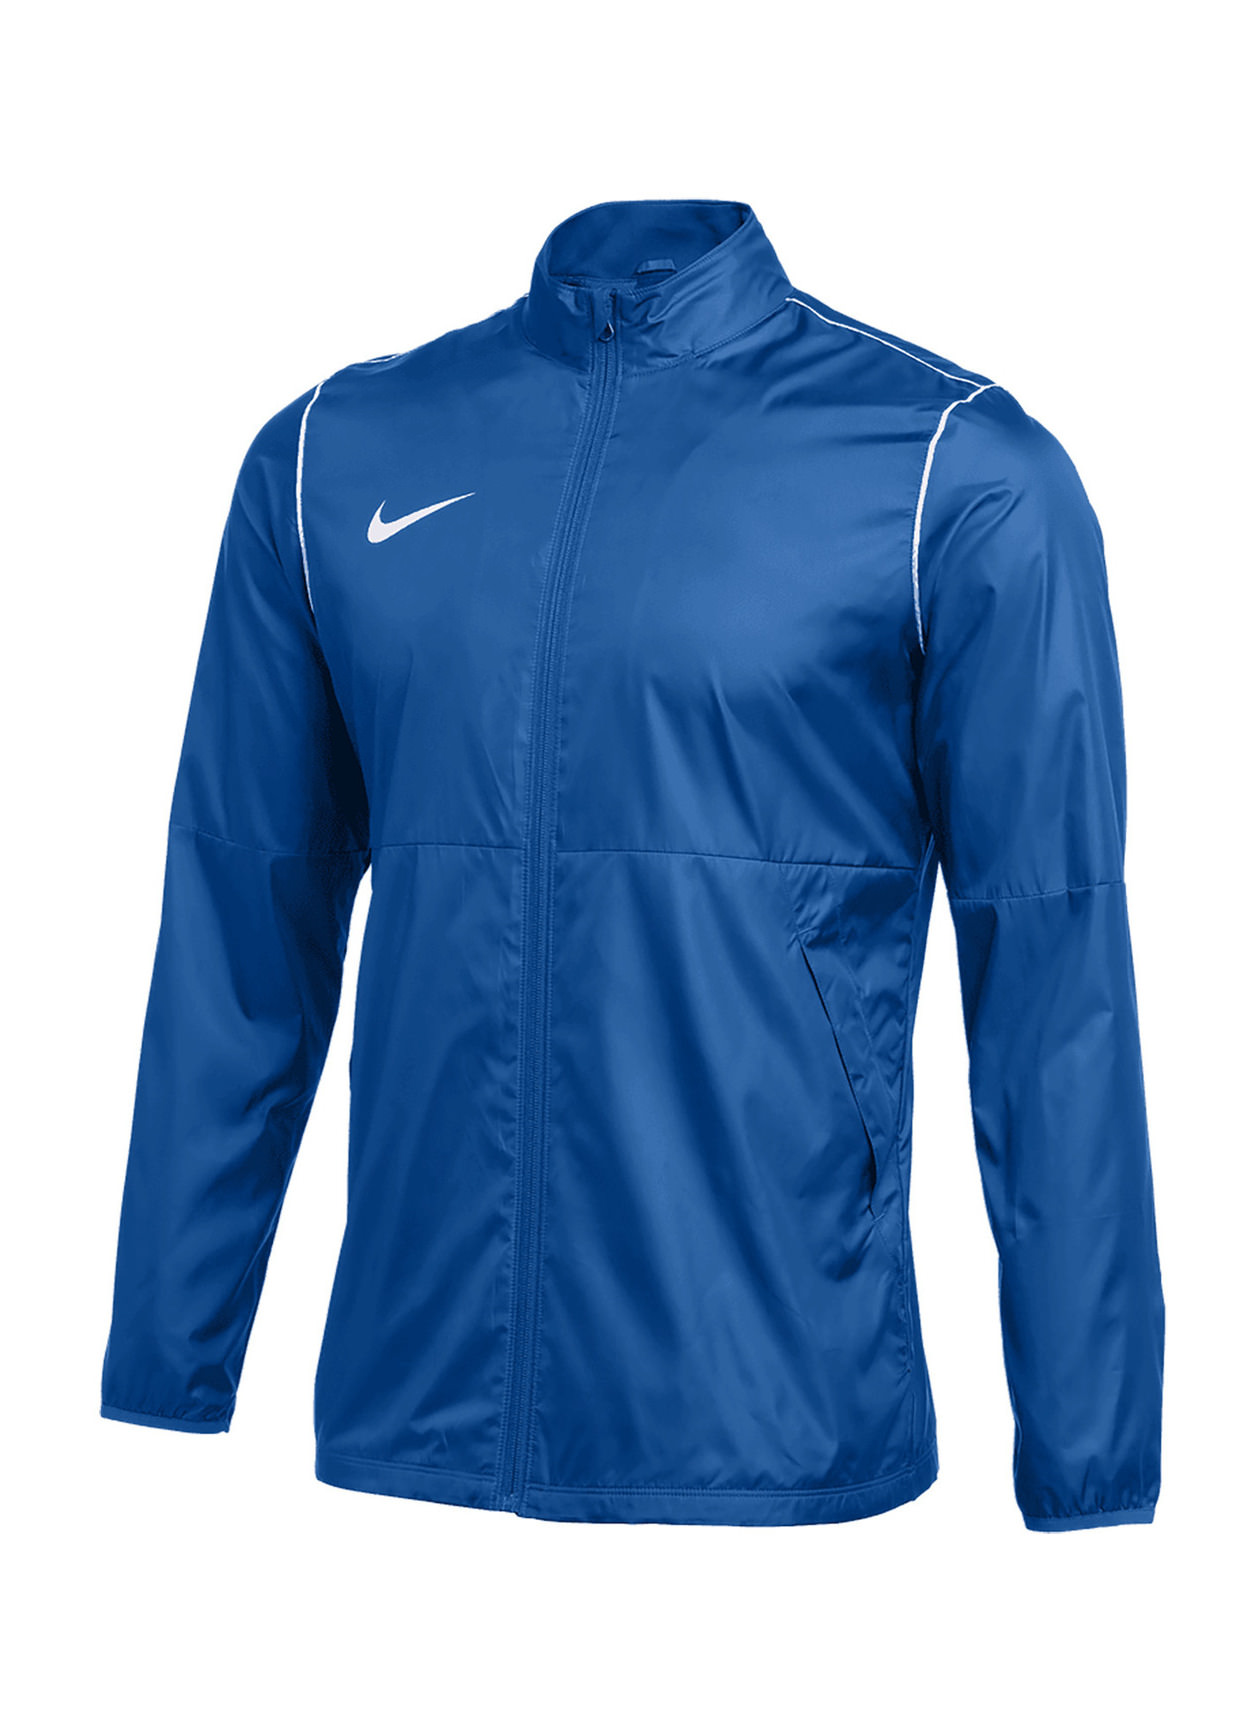 Custom Nike Men's Royal Blue-White-White Woven Repel Jacket ...